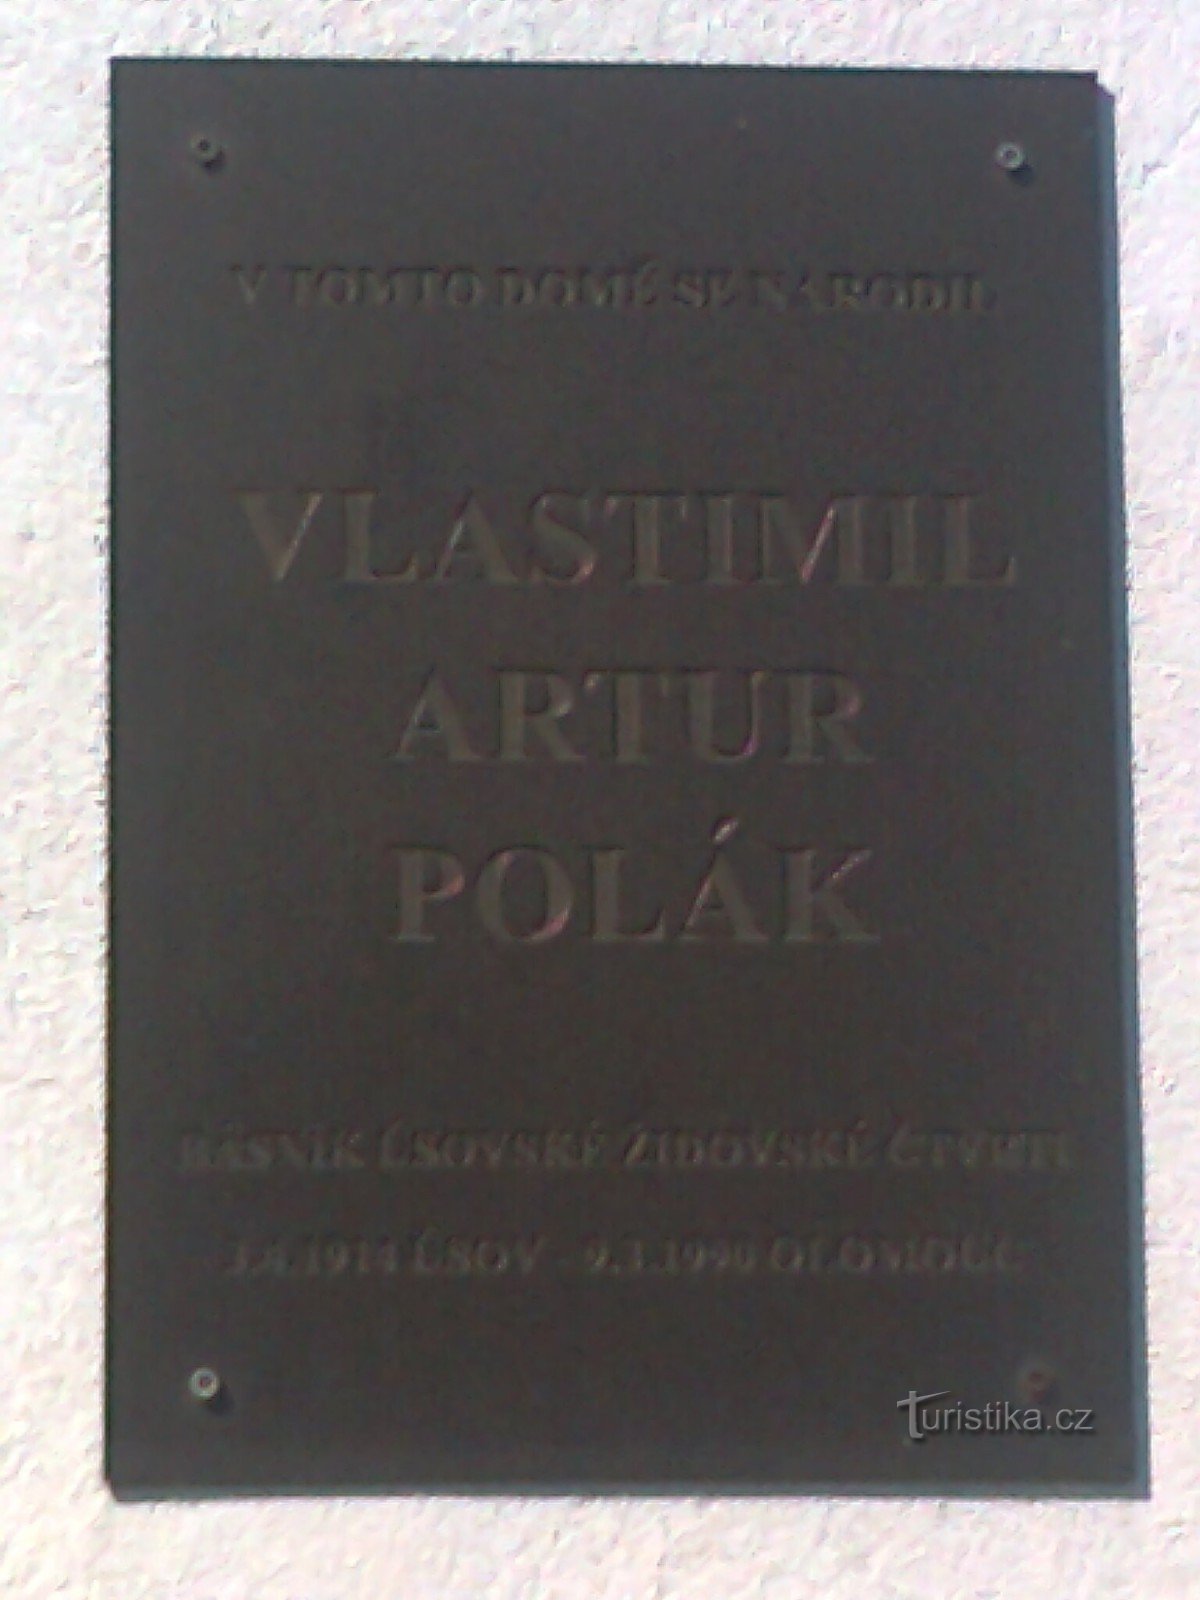 Усов - родина поэта и писателя Властимила Артура Полака.